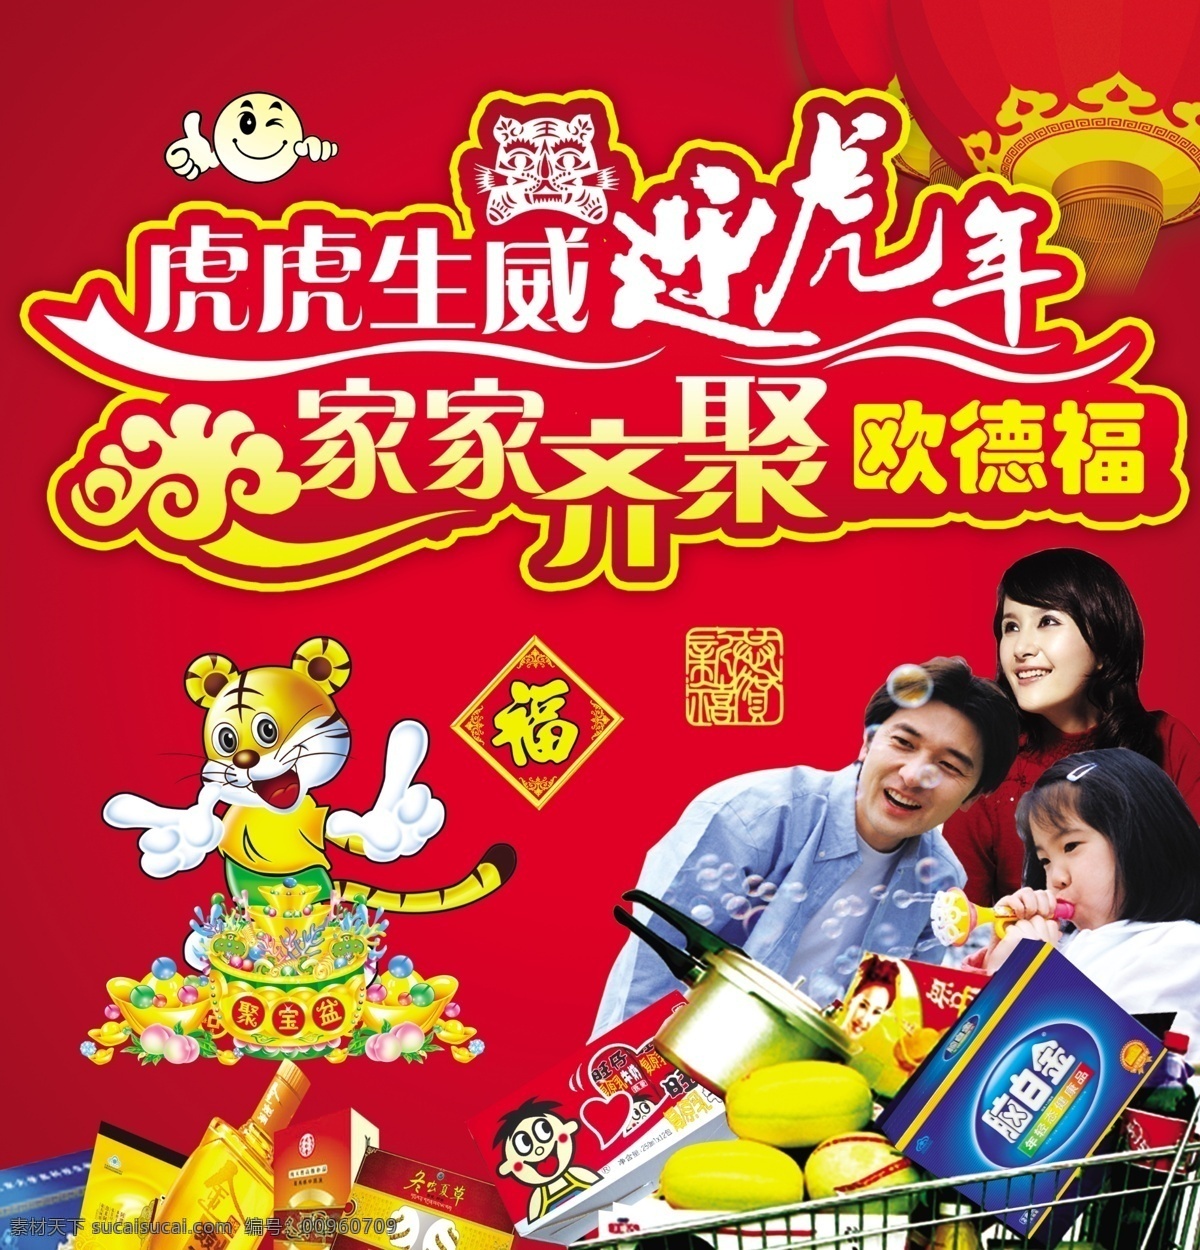 欧 德福 虎年 海报 一家人购物 老虎 福字 聚宝盆 笑脸图 广告设计模板 源文件